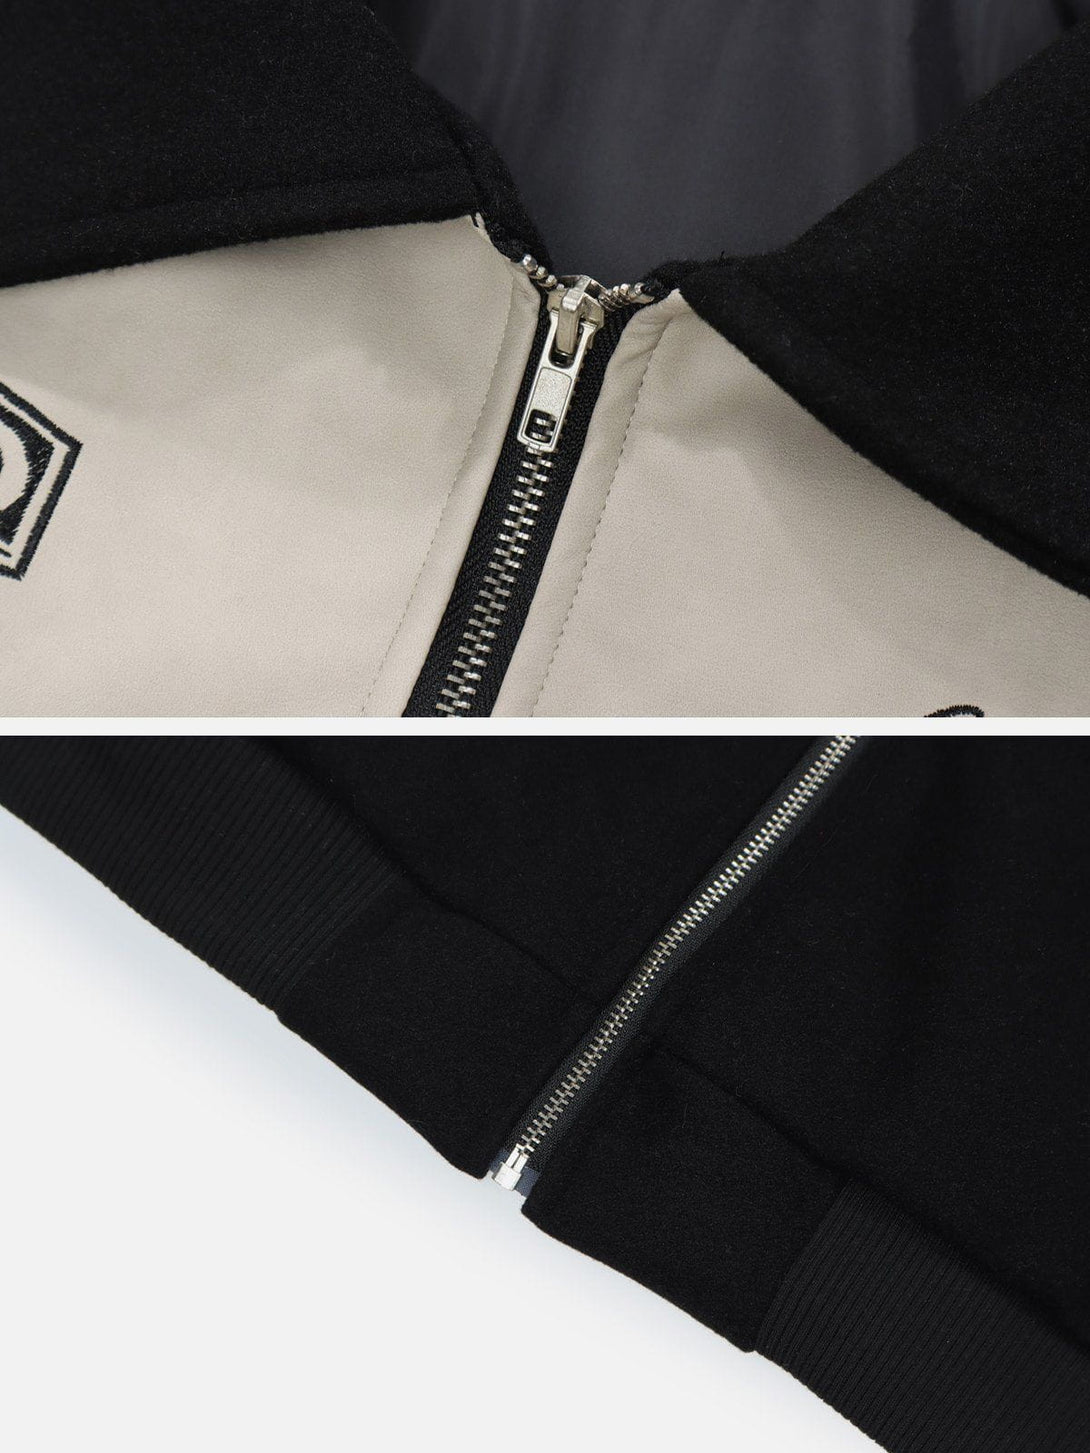 Levefly - Vintage Patchwork Bomber jacket - Streetwear Fashion - levefly.com